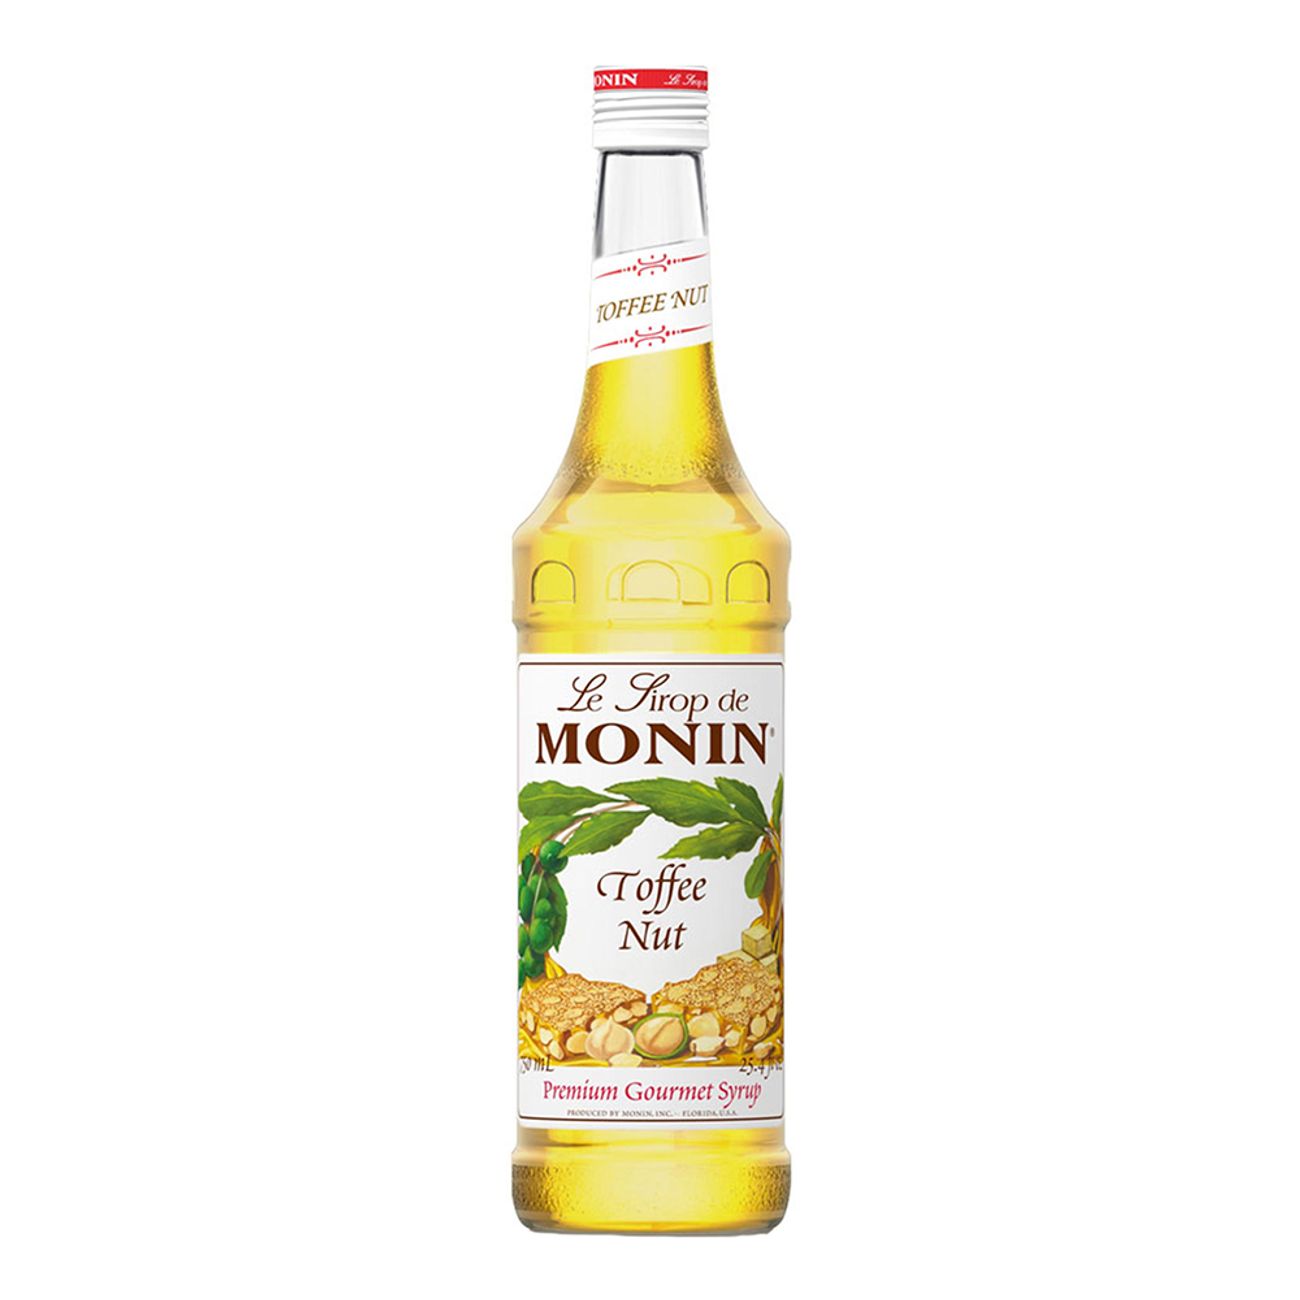 monin-notkola-drinkmix-1